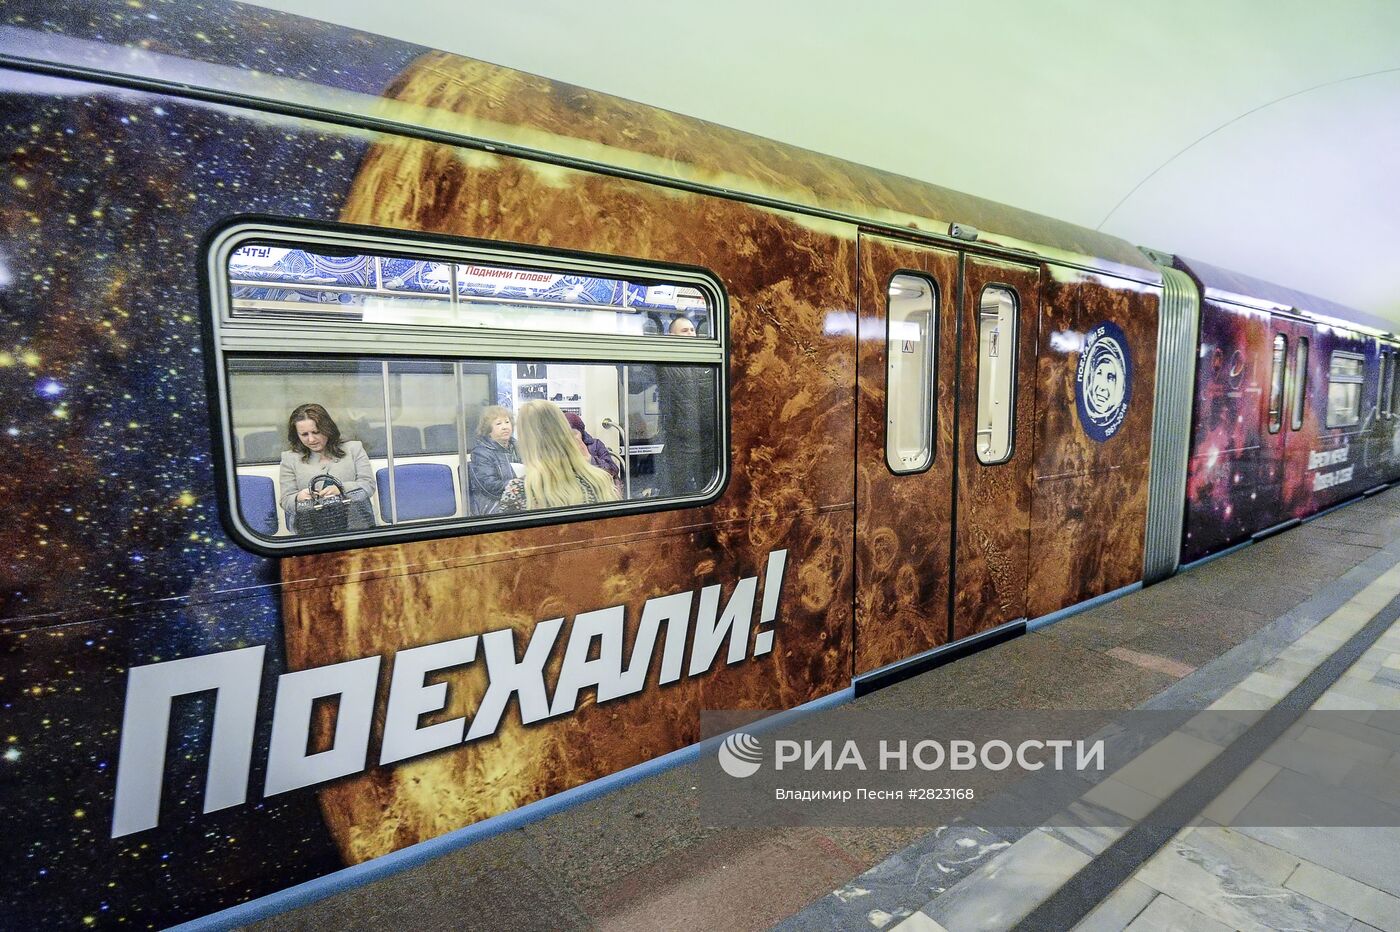 Тематический поезд московского метро, посвященный 55-летию первого